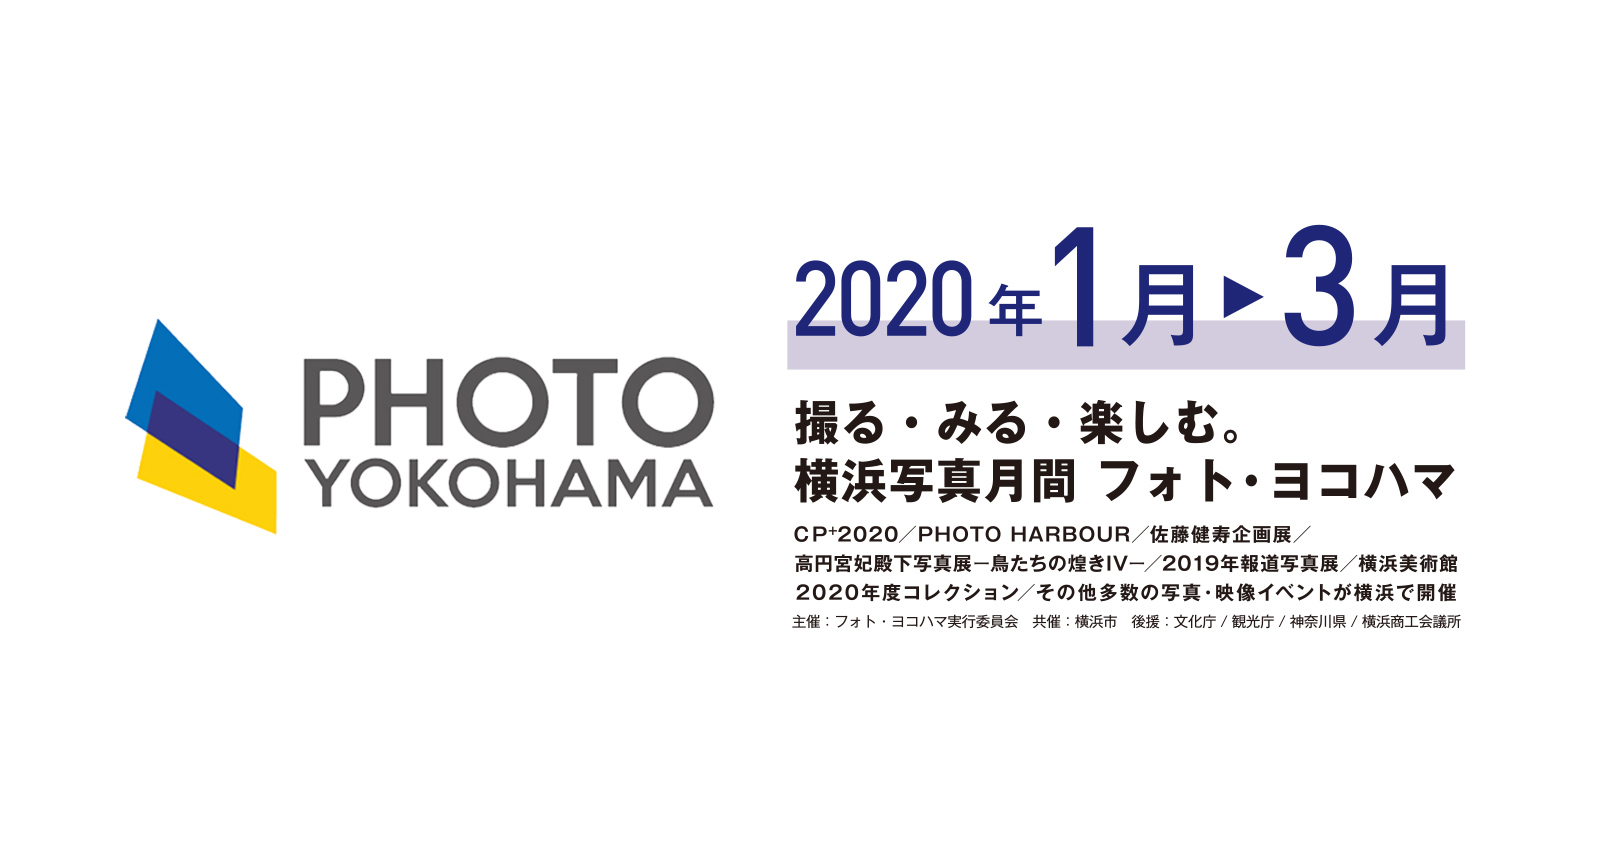 橫濱攝影節 PHOTO YOKOHAMA 2020
